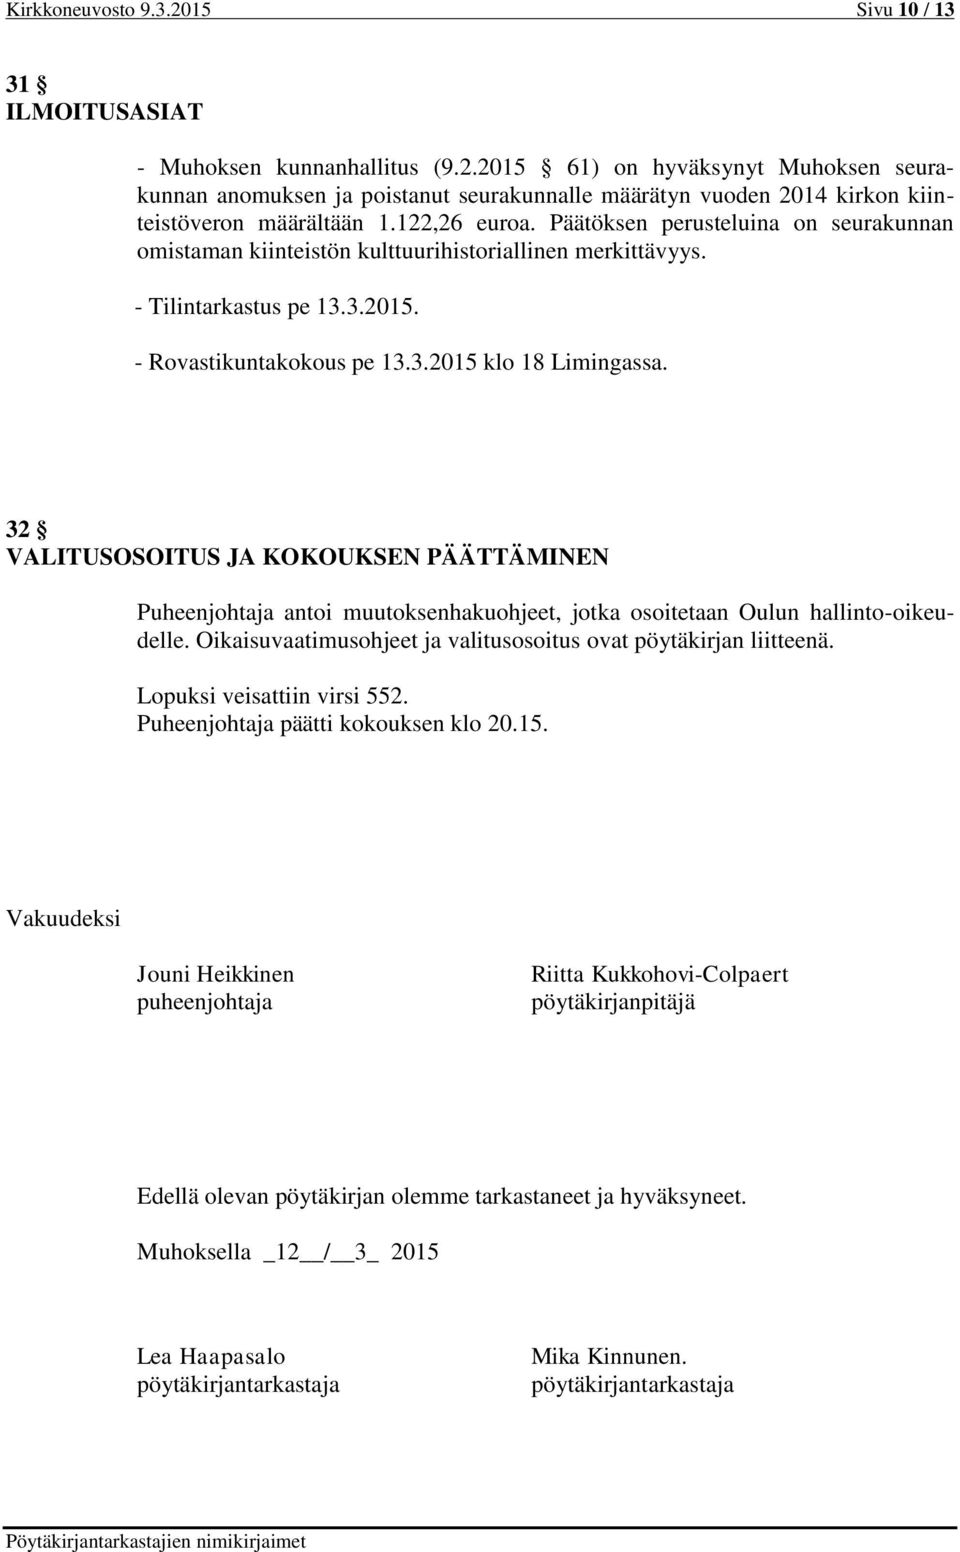 32 VALITUSOSOITUS JA KOKOUKSEN PÄÄTTÄMINEN Puheenjohtaja antoi muutoksenhakuohjeet, jotka osoitetaan Oulun hallinto-oikeudelle. Oikaisuvaatimusohjeet ja valitusosoitus ovat pöytäkirjan liitteenä.